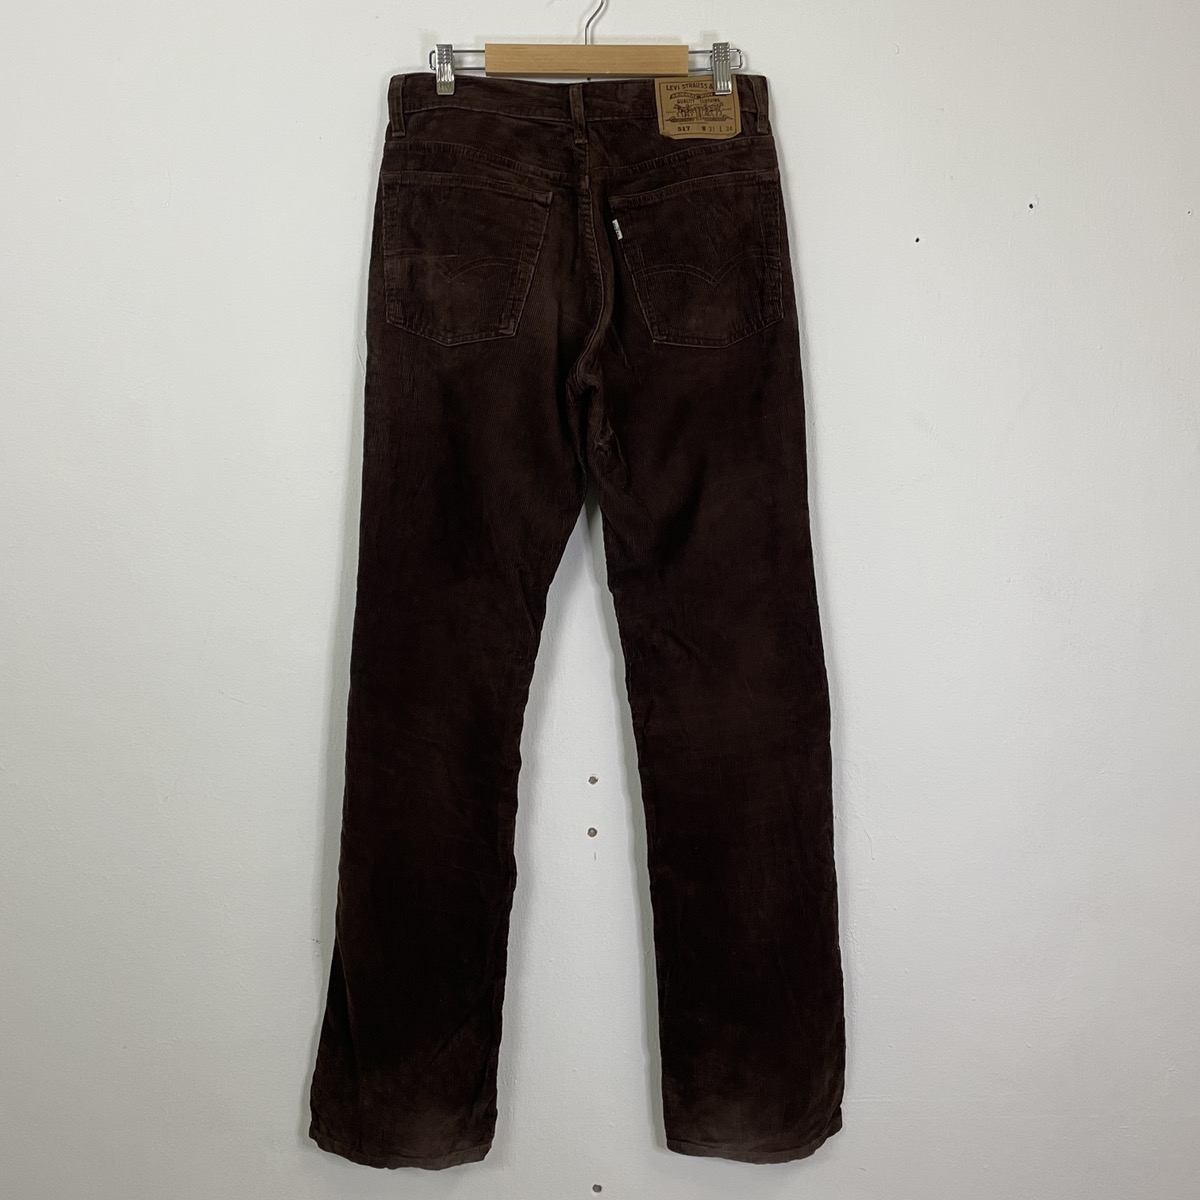 Vintage Levis Corduroy Pants - 6